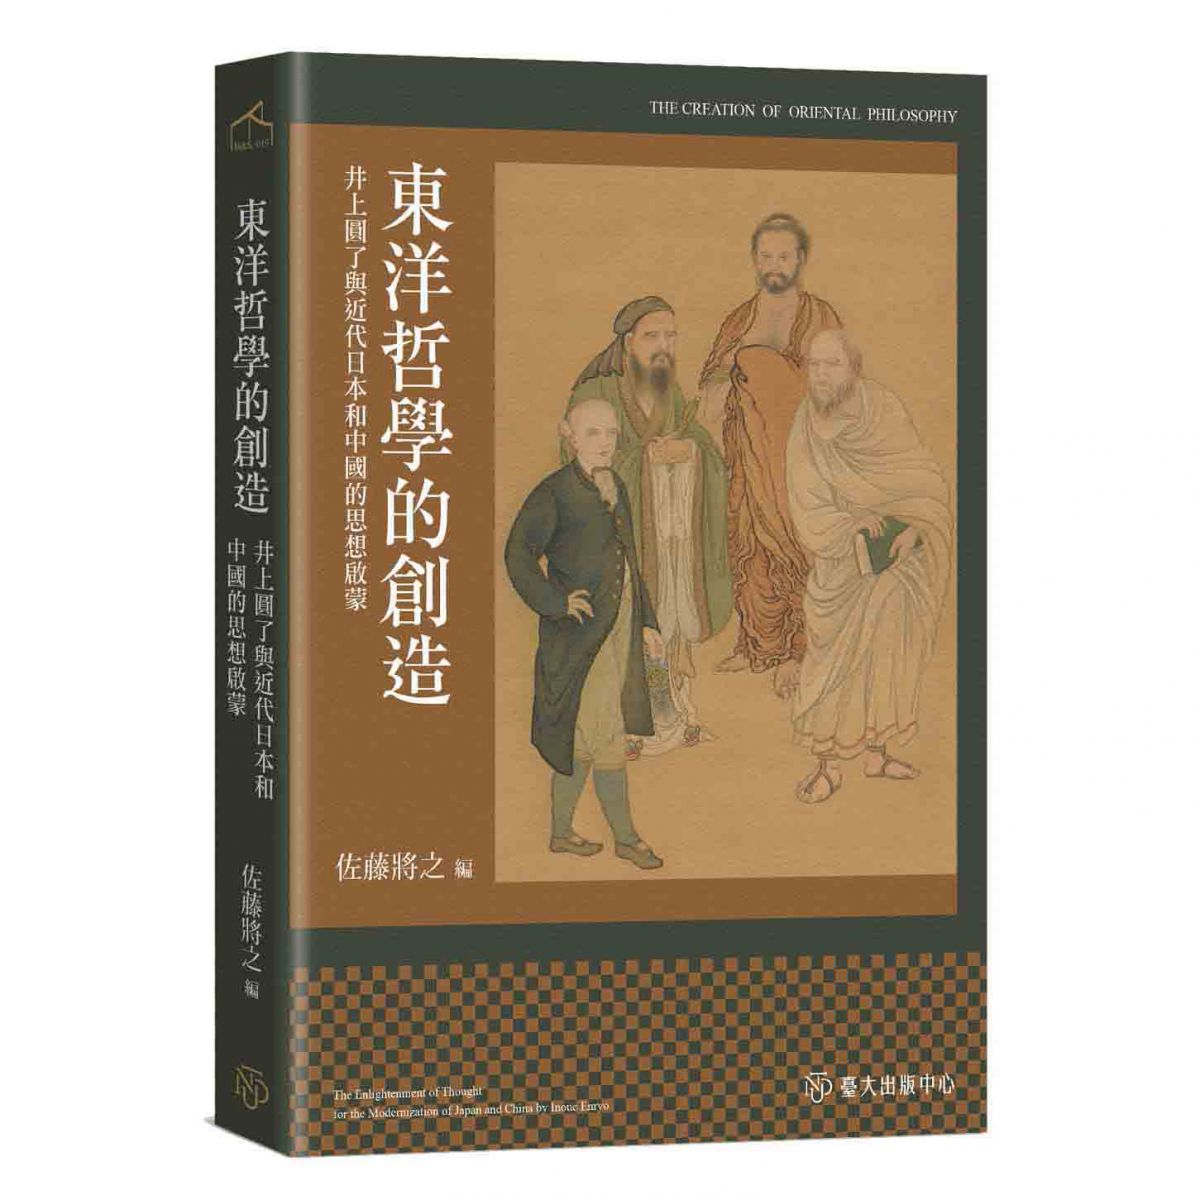 《東洋哲學的創造》以井上圓了的思想進行探析，及其對日本與中國思想的影響